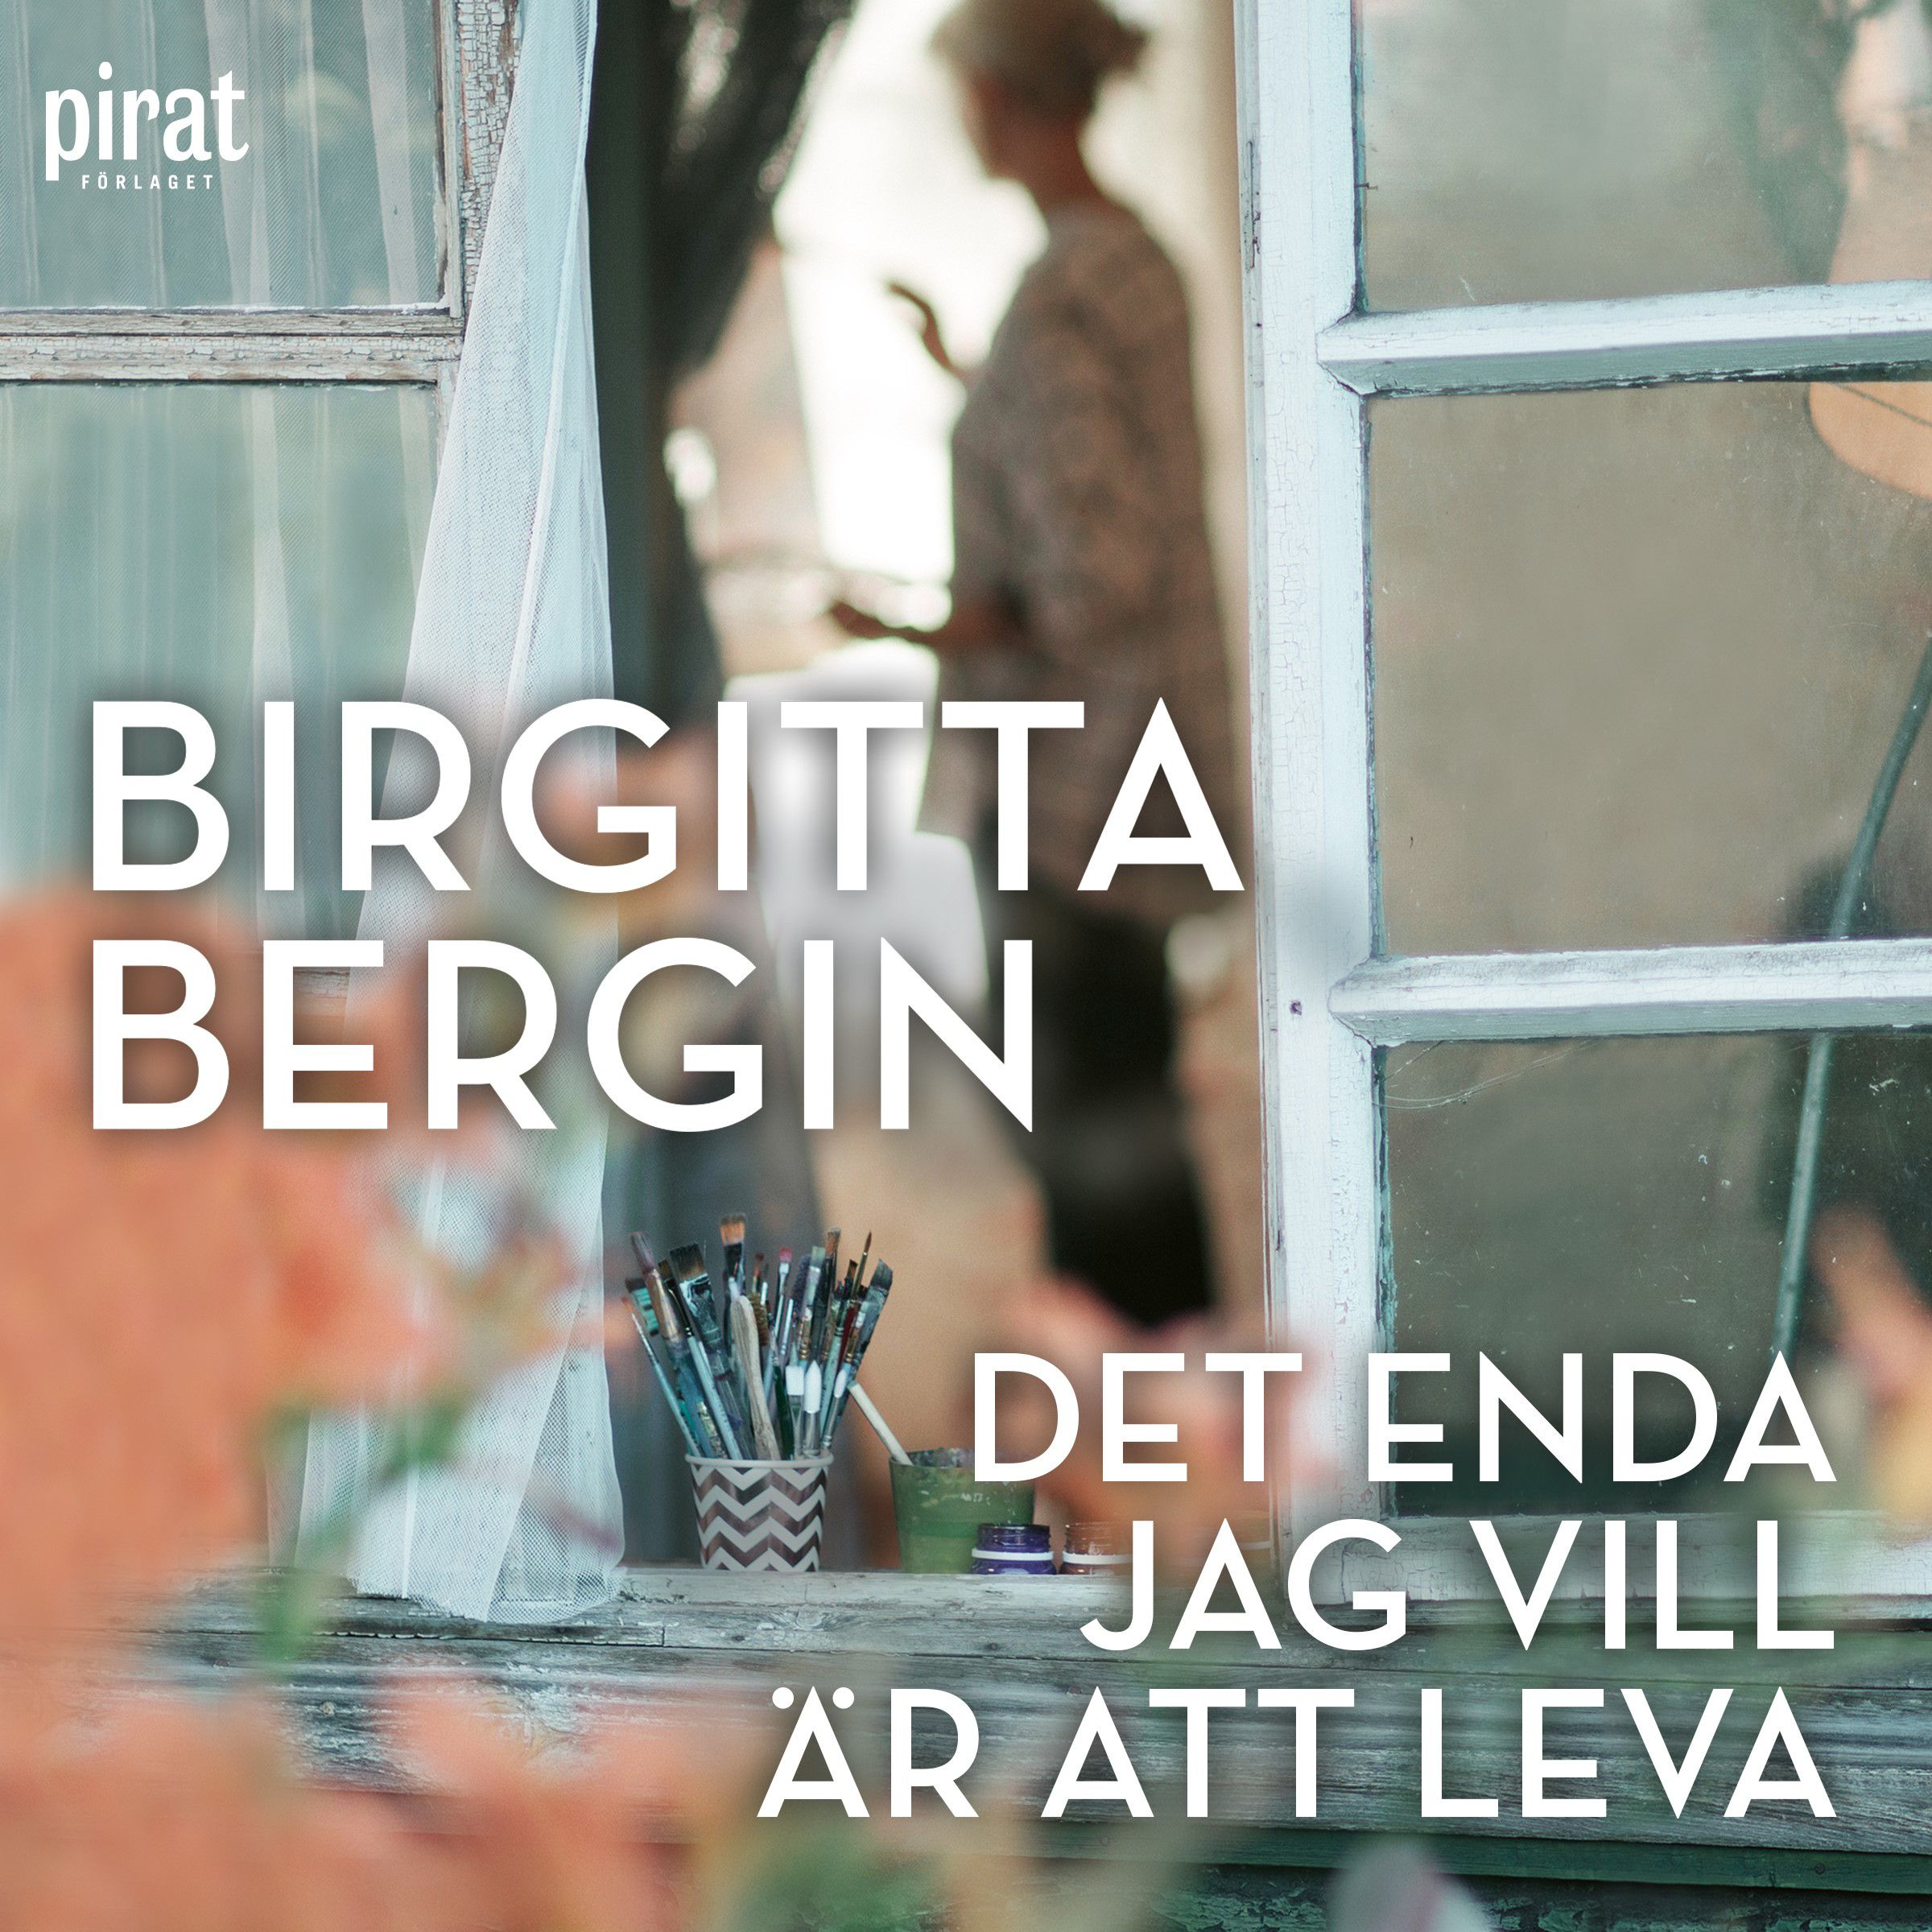 Det enda jag vill är att leva, lydbog af Birgitta Bergin